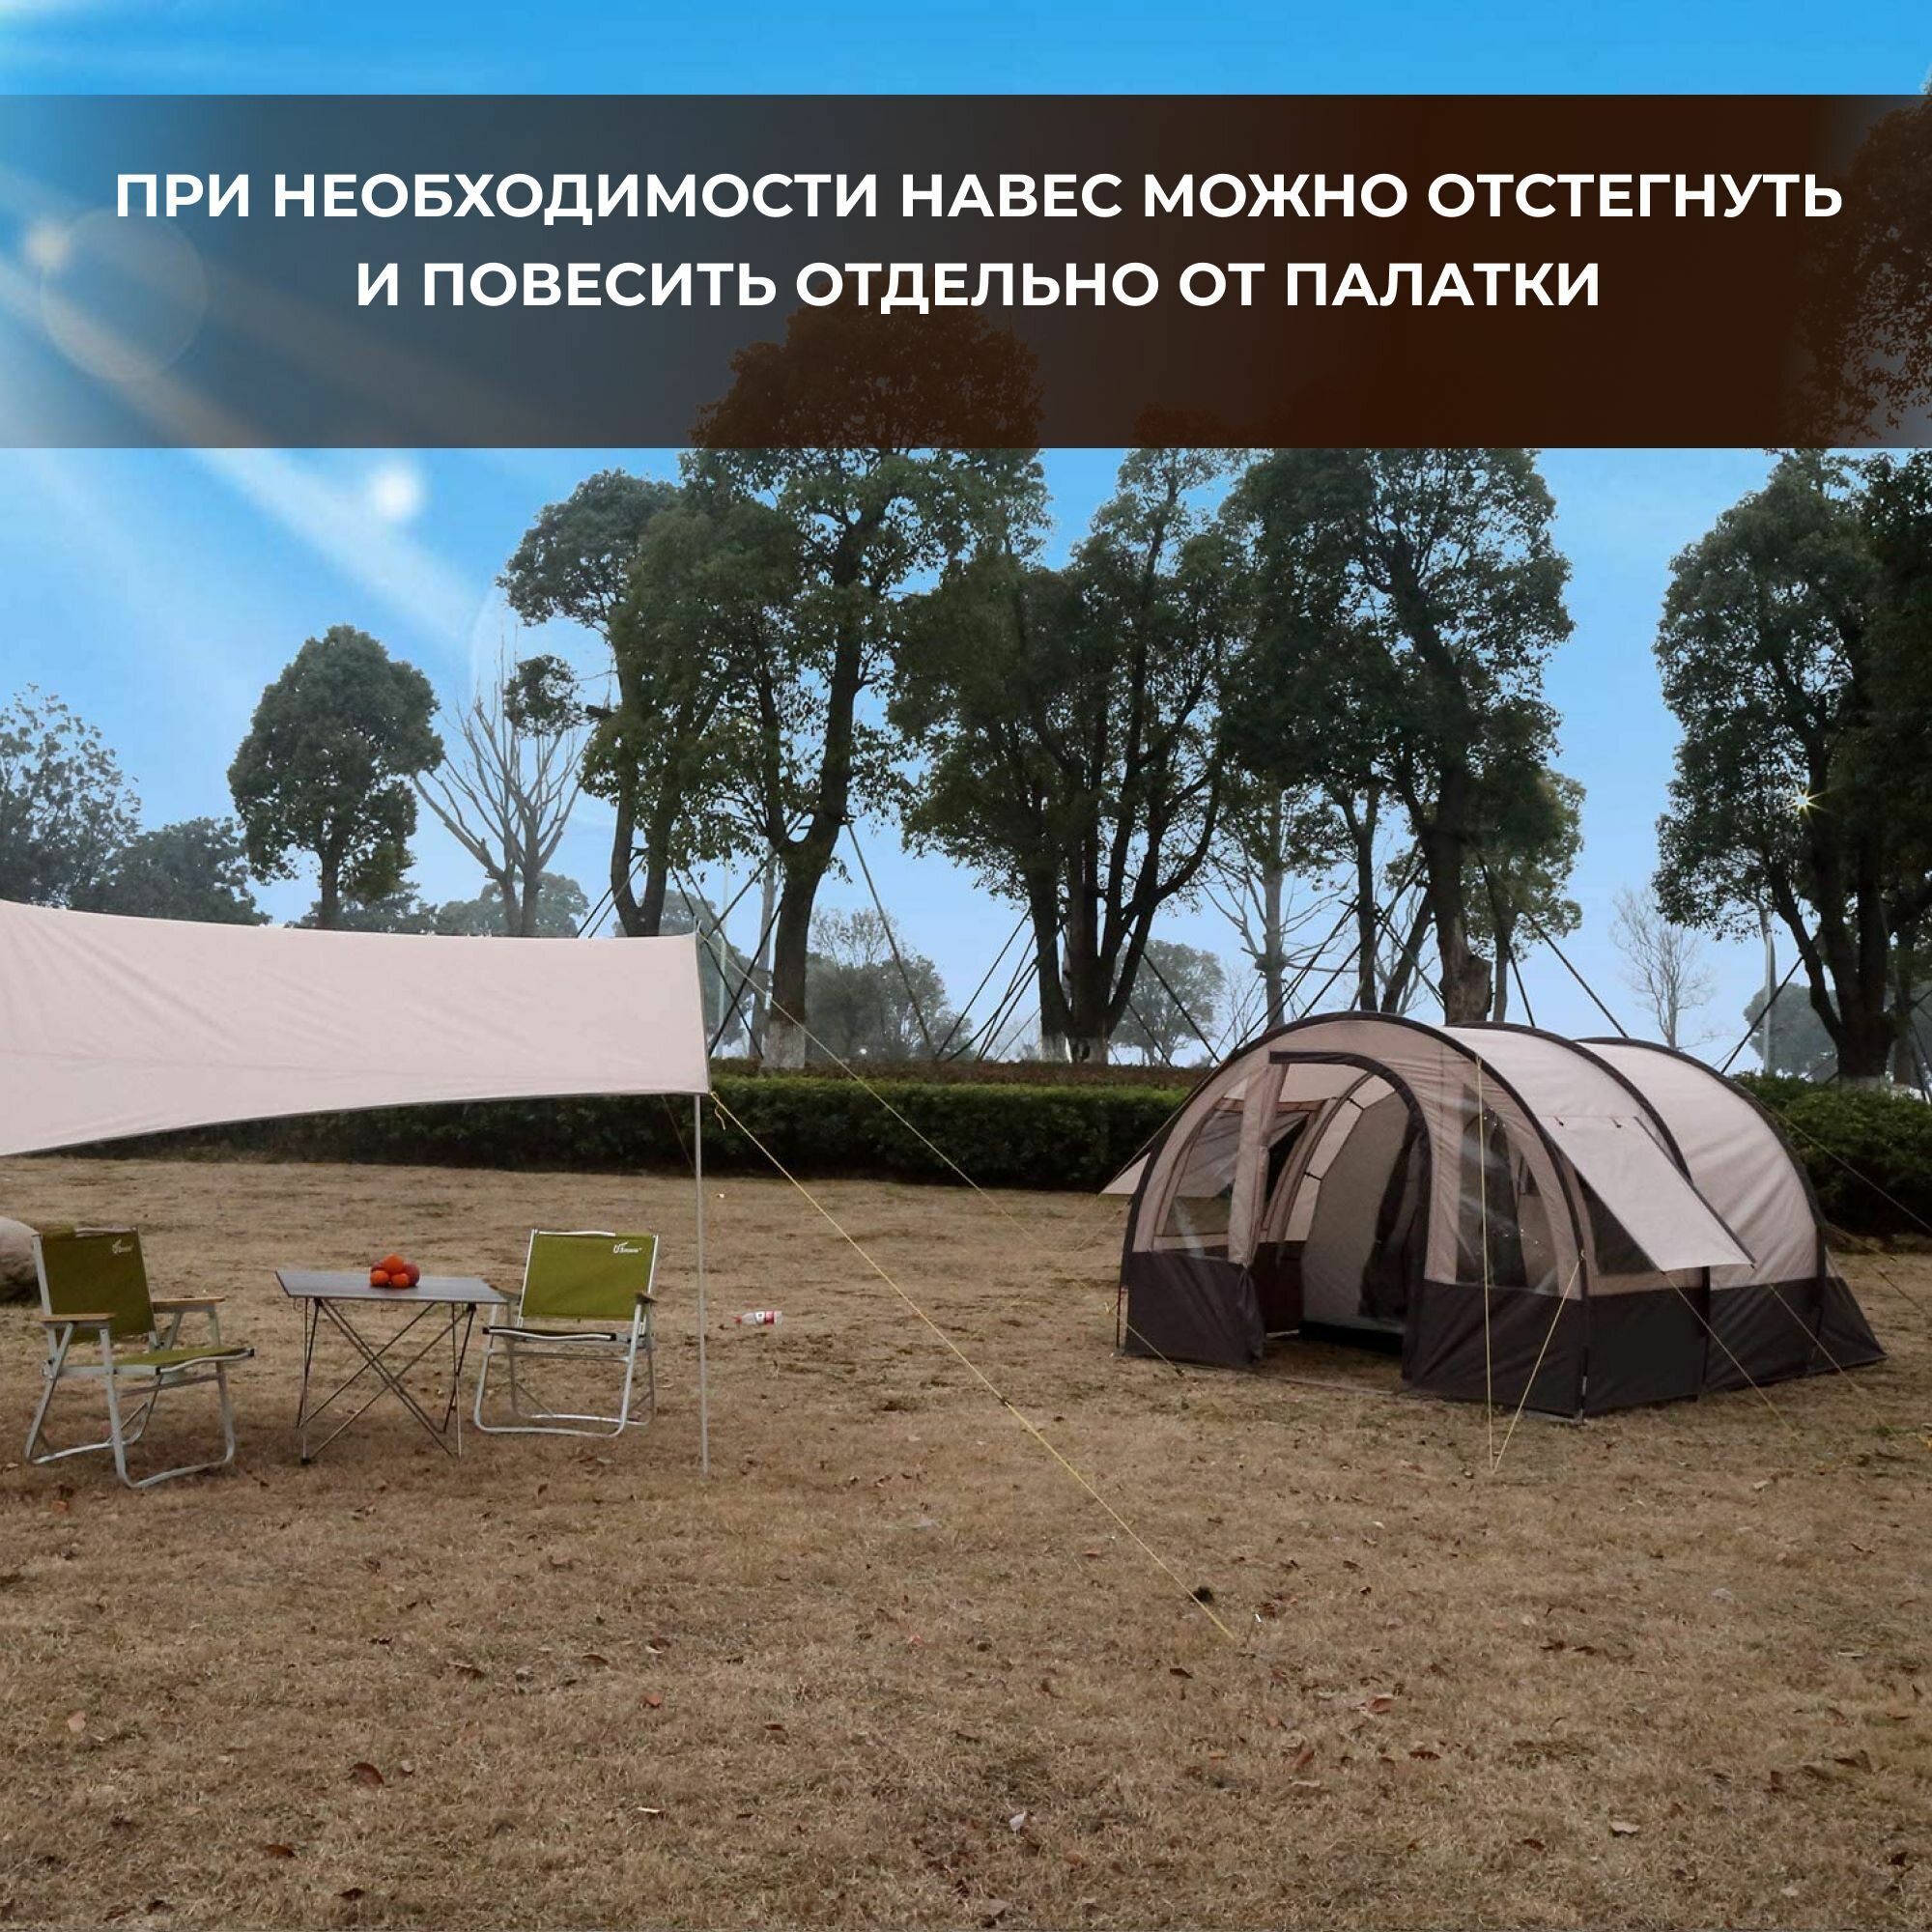 Палатка туристическая 6 местная с тамбуром двухслойная, палатка шатер пляжная с москитной сеткой для кемпинга, туризма и рыбалки